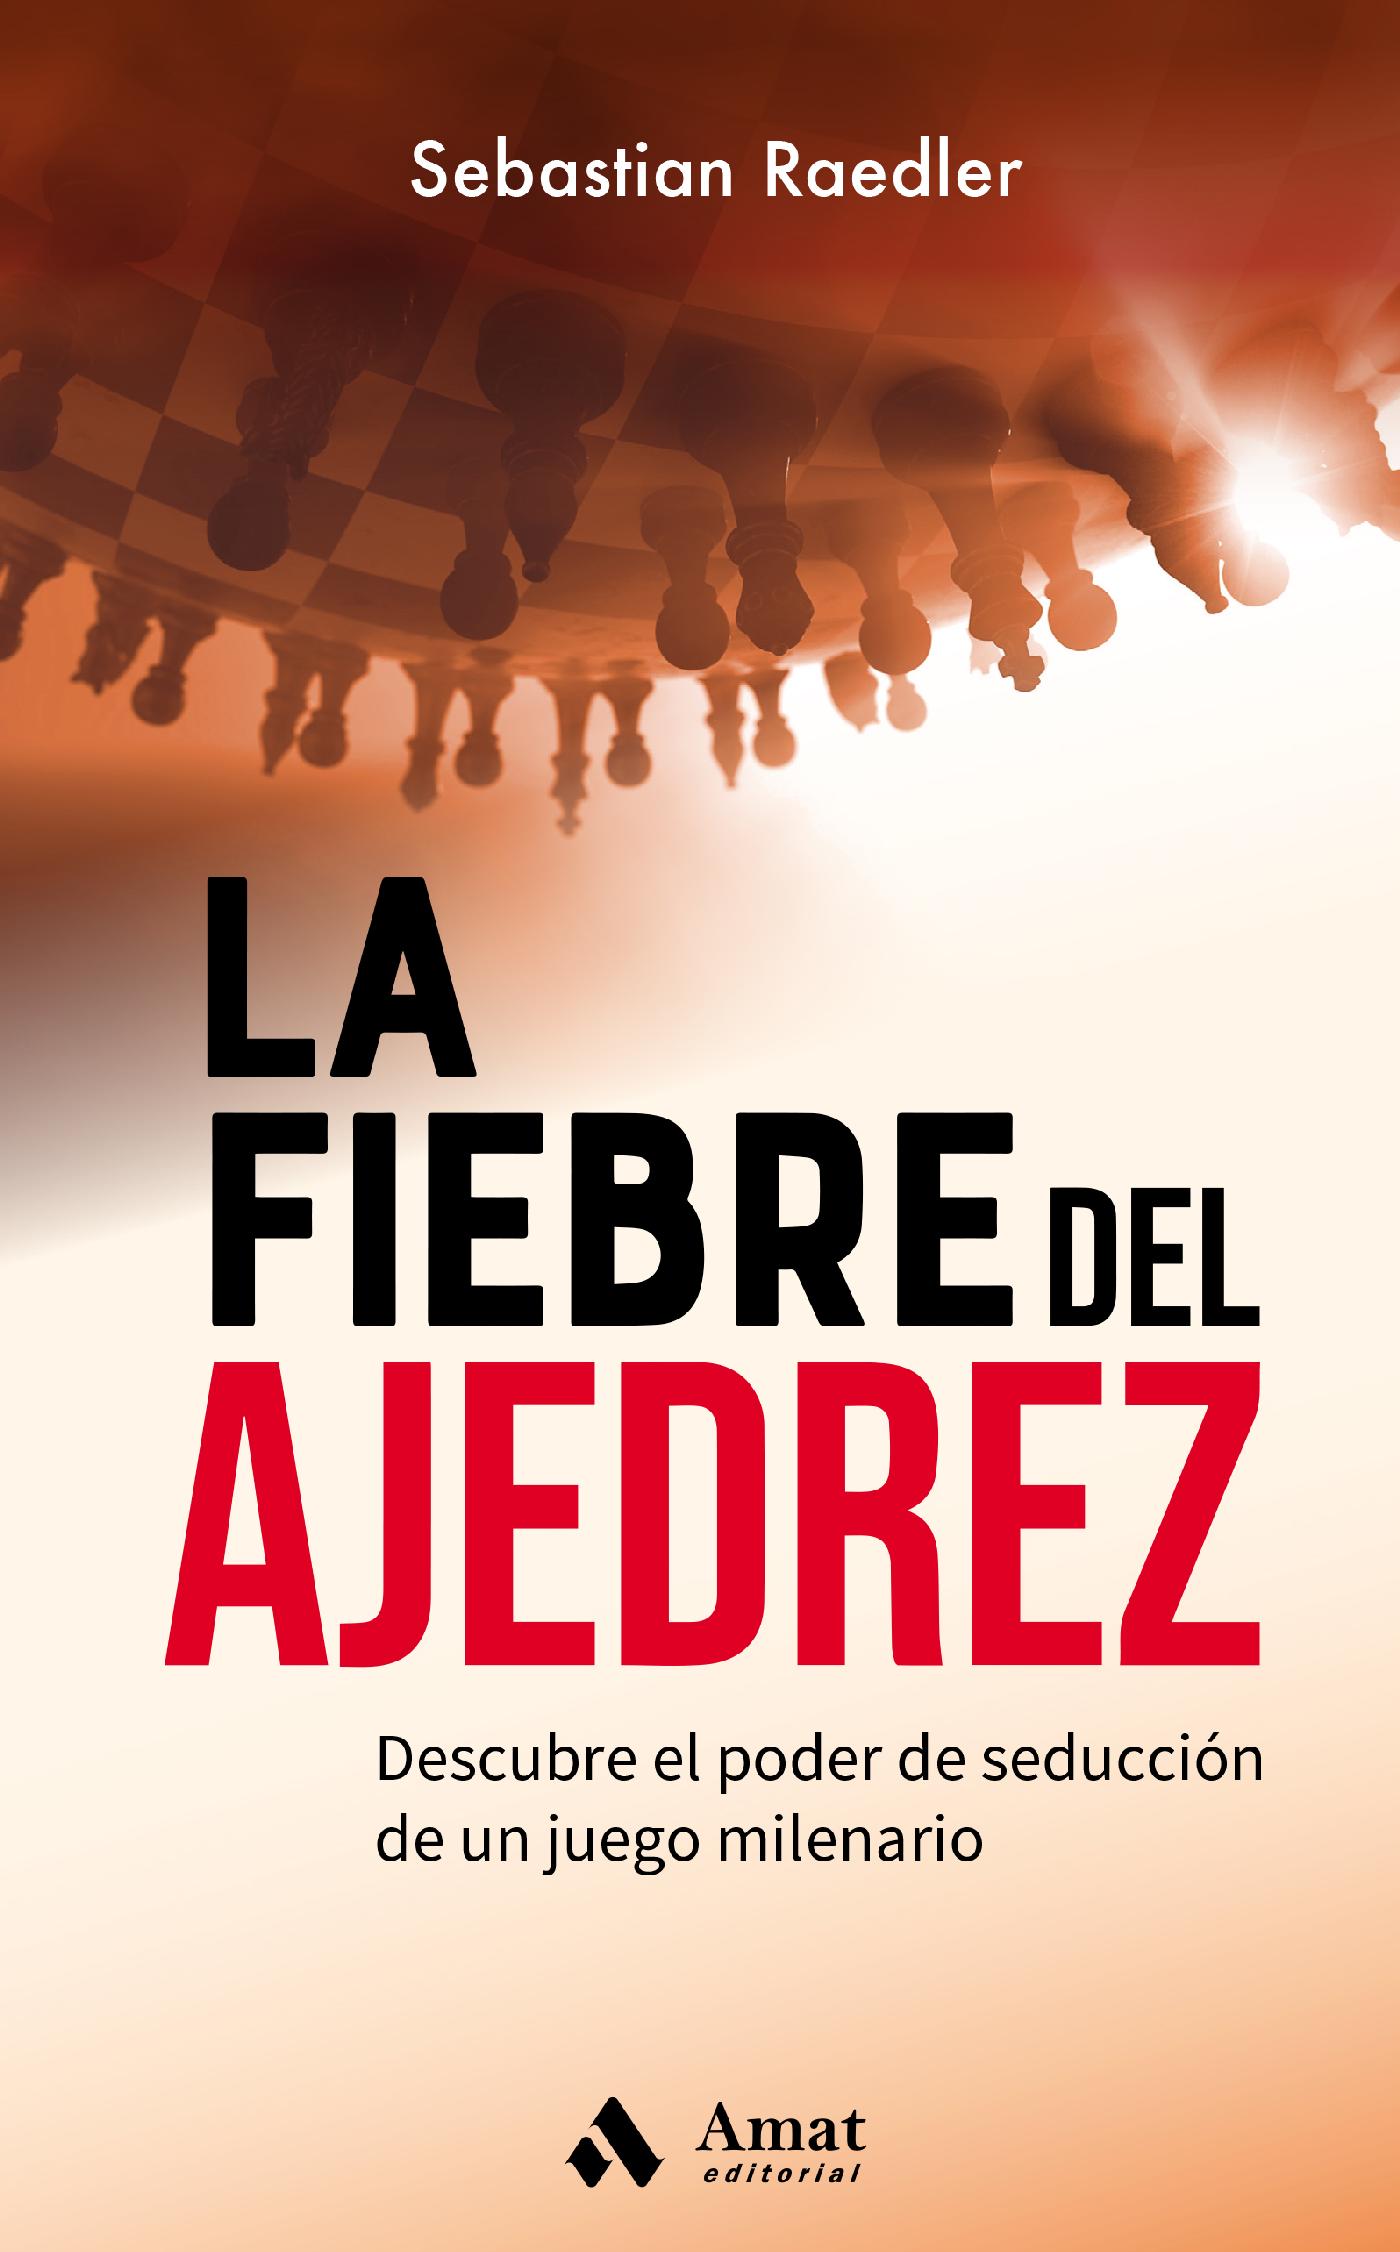 eBooks Kindle: Fede y el ajedrez (Spanish Edition), Ramos  Ramos, José Antonio, cabeza, Ajedrez